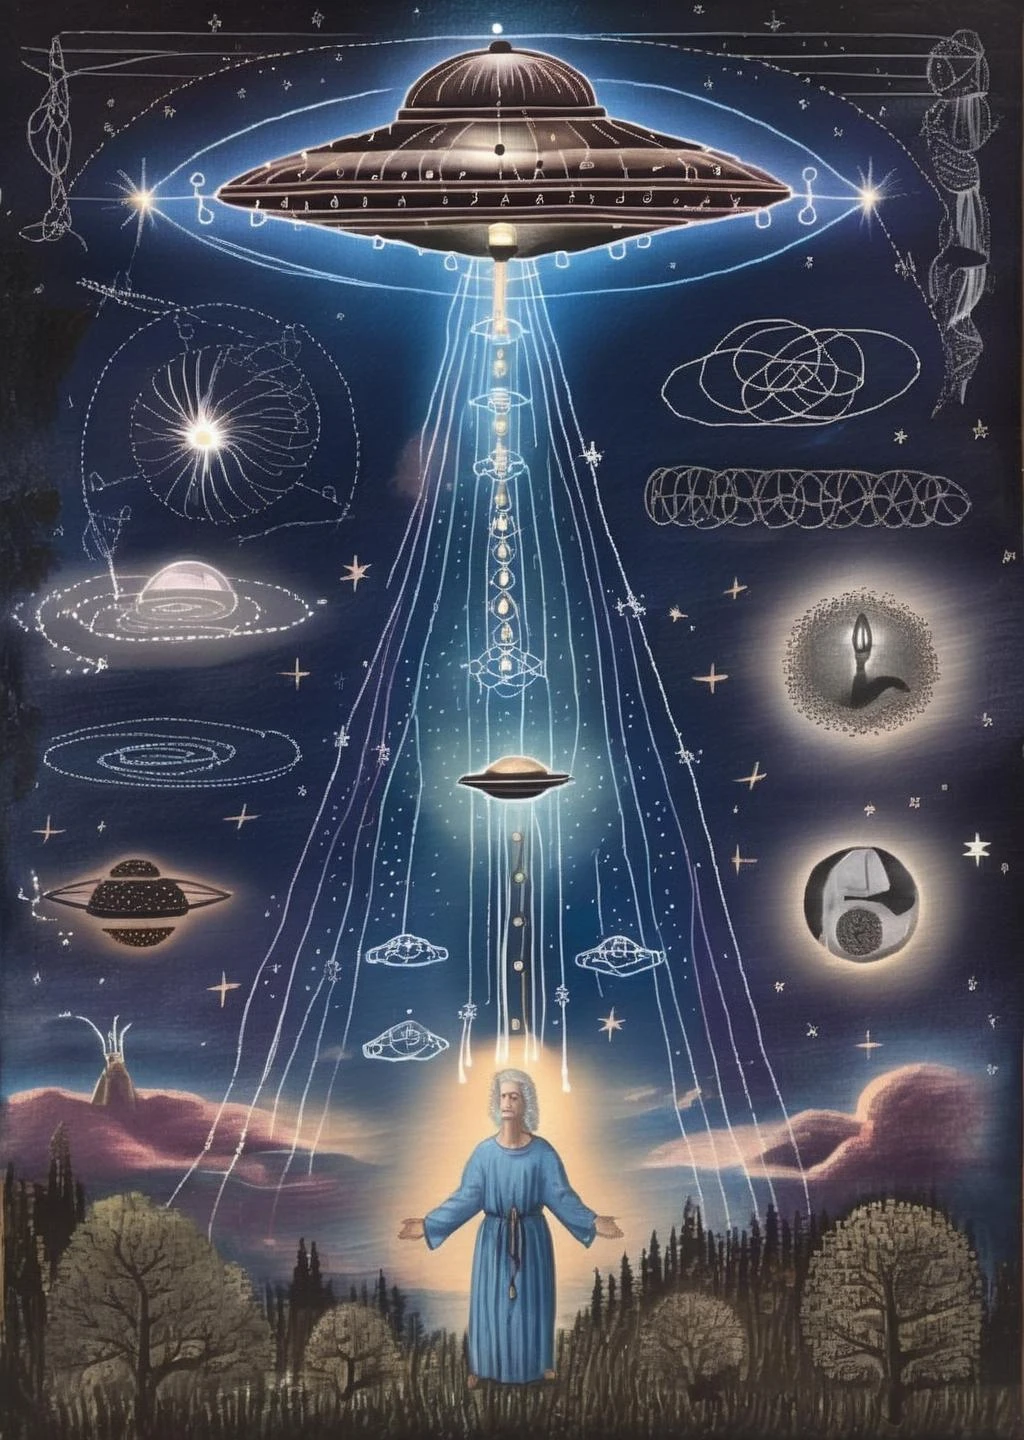 アーケイン スターライト: UFOは夜空に宇宙の啓示を刻む霊的な光線を発する, 神秘主義と星の輝きが絡み合う.